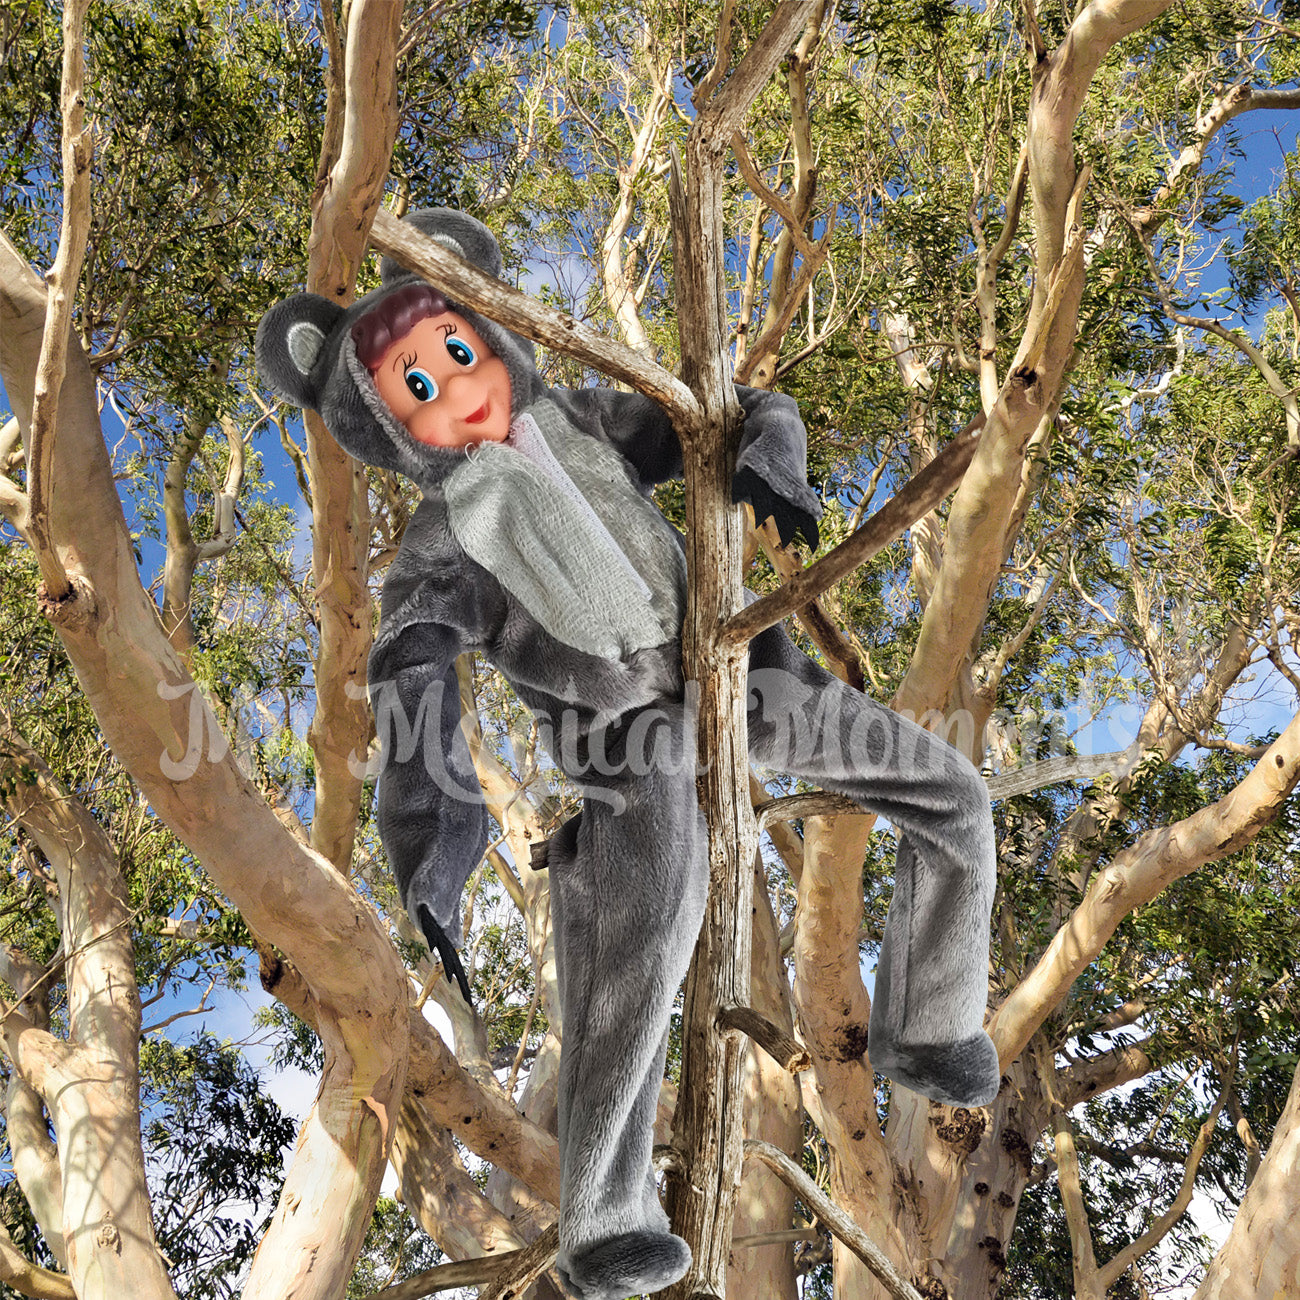 Elves behavin badly dressed as a koala in a tree